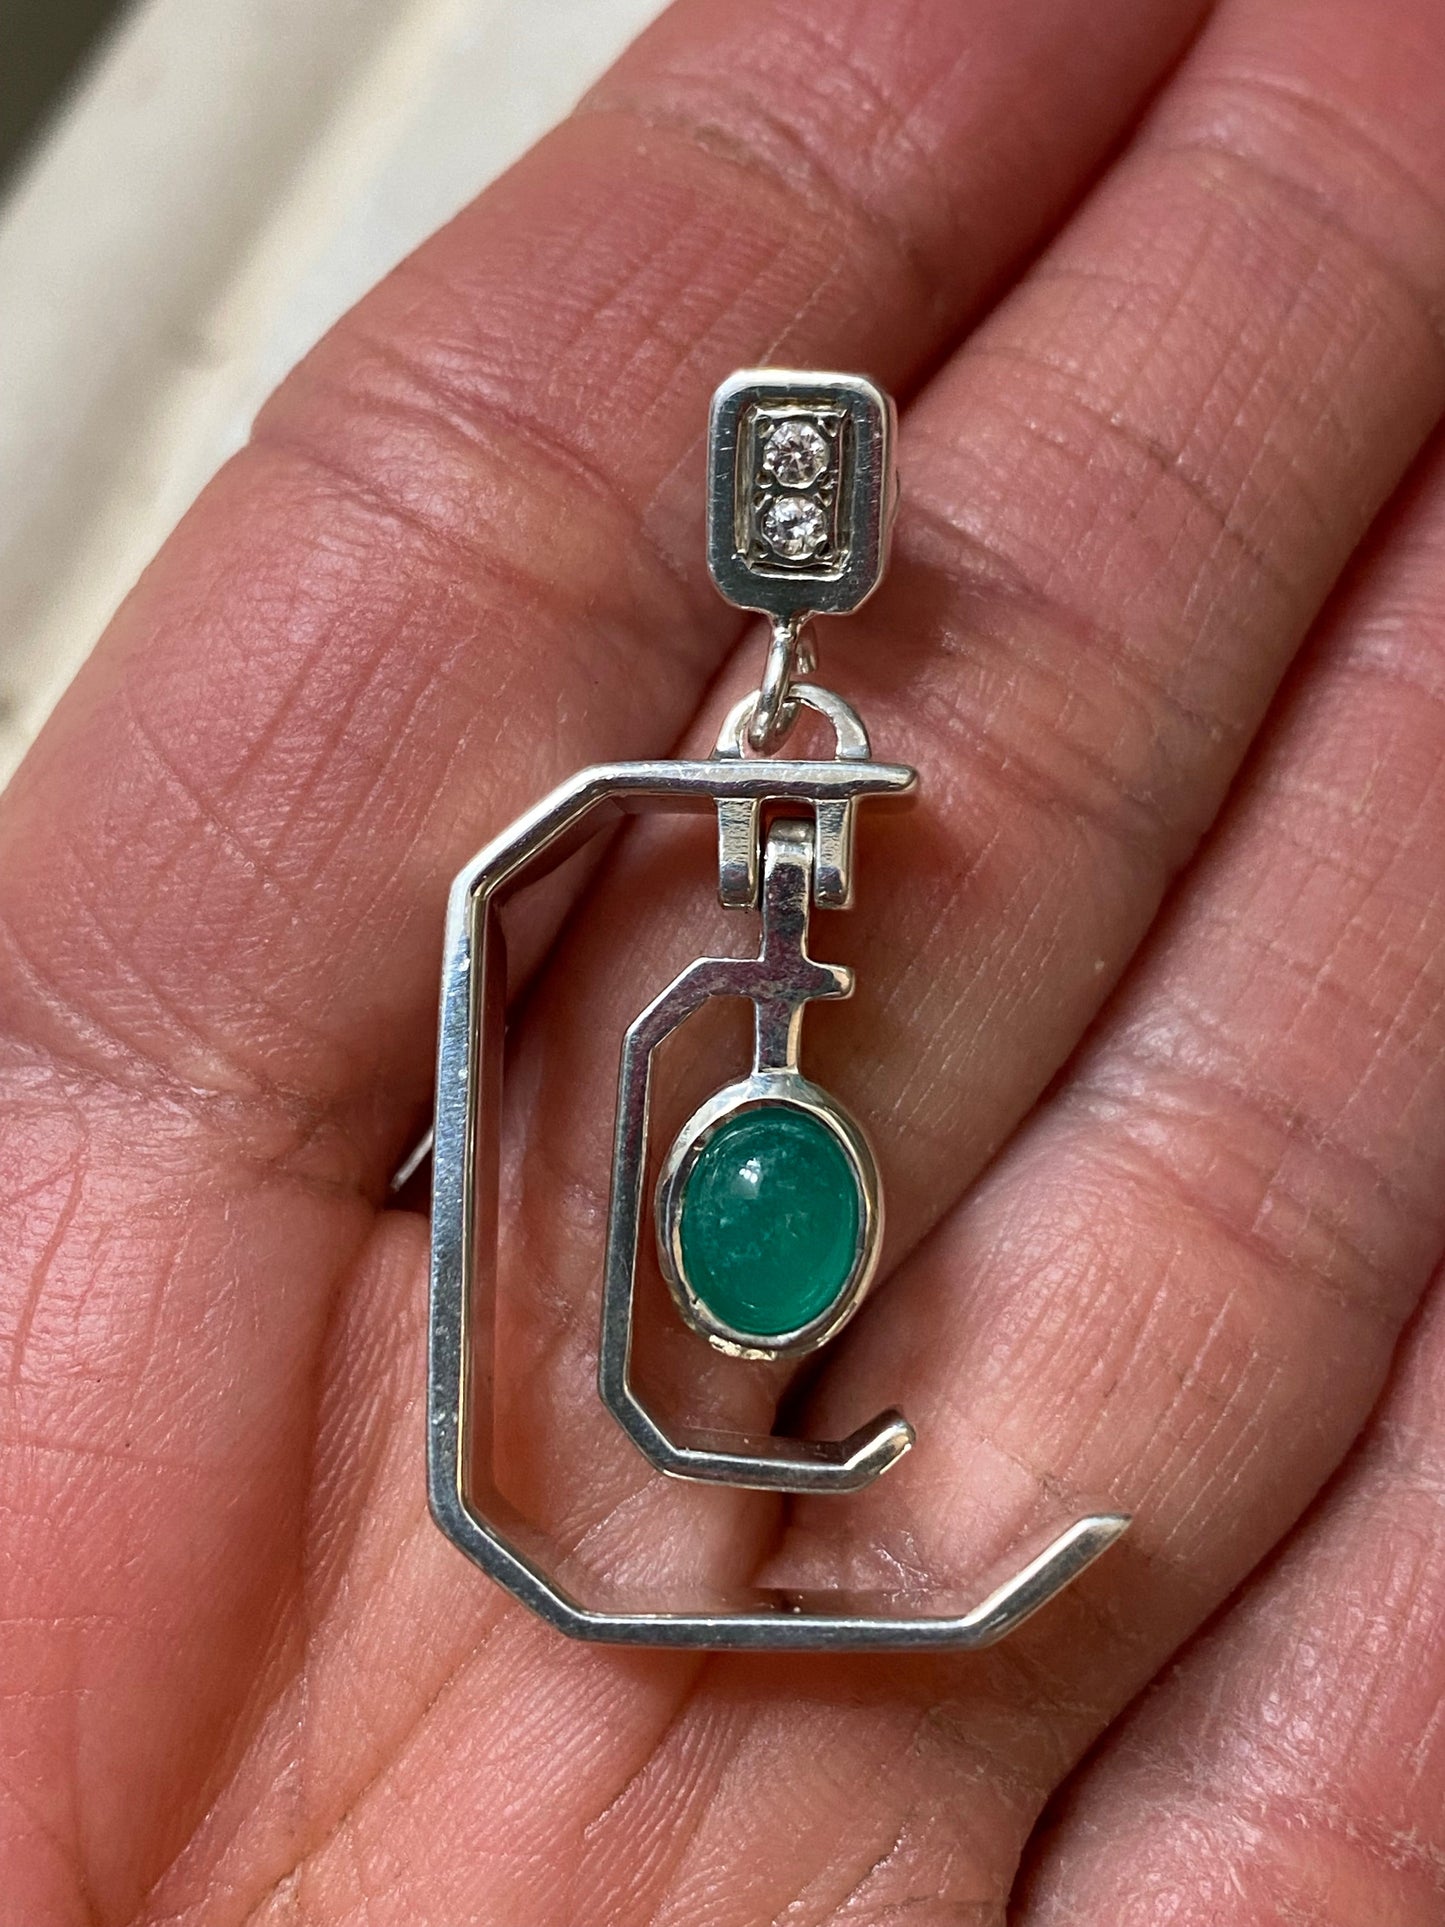 Colombian Emerald Earrings in Sterling Silver dangles 1ct set 3